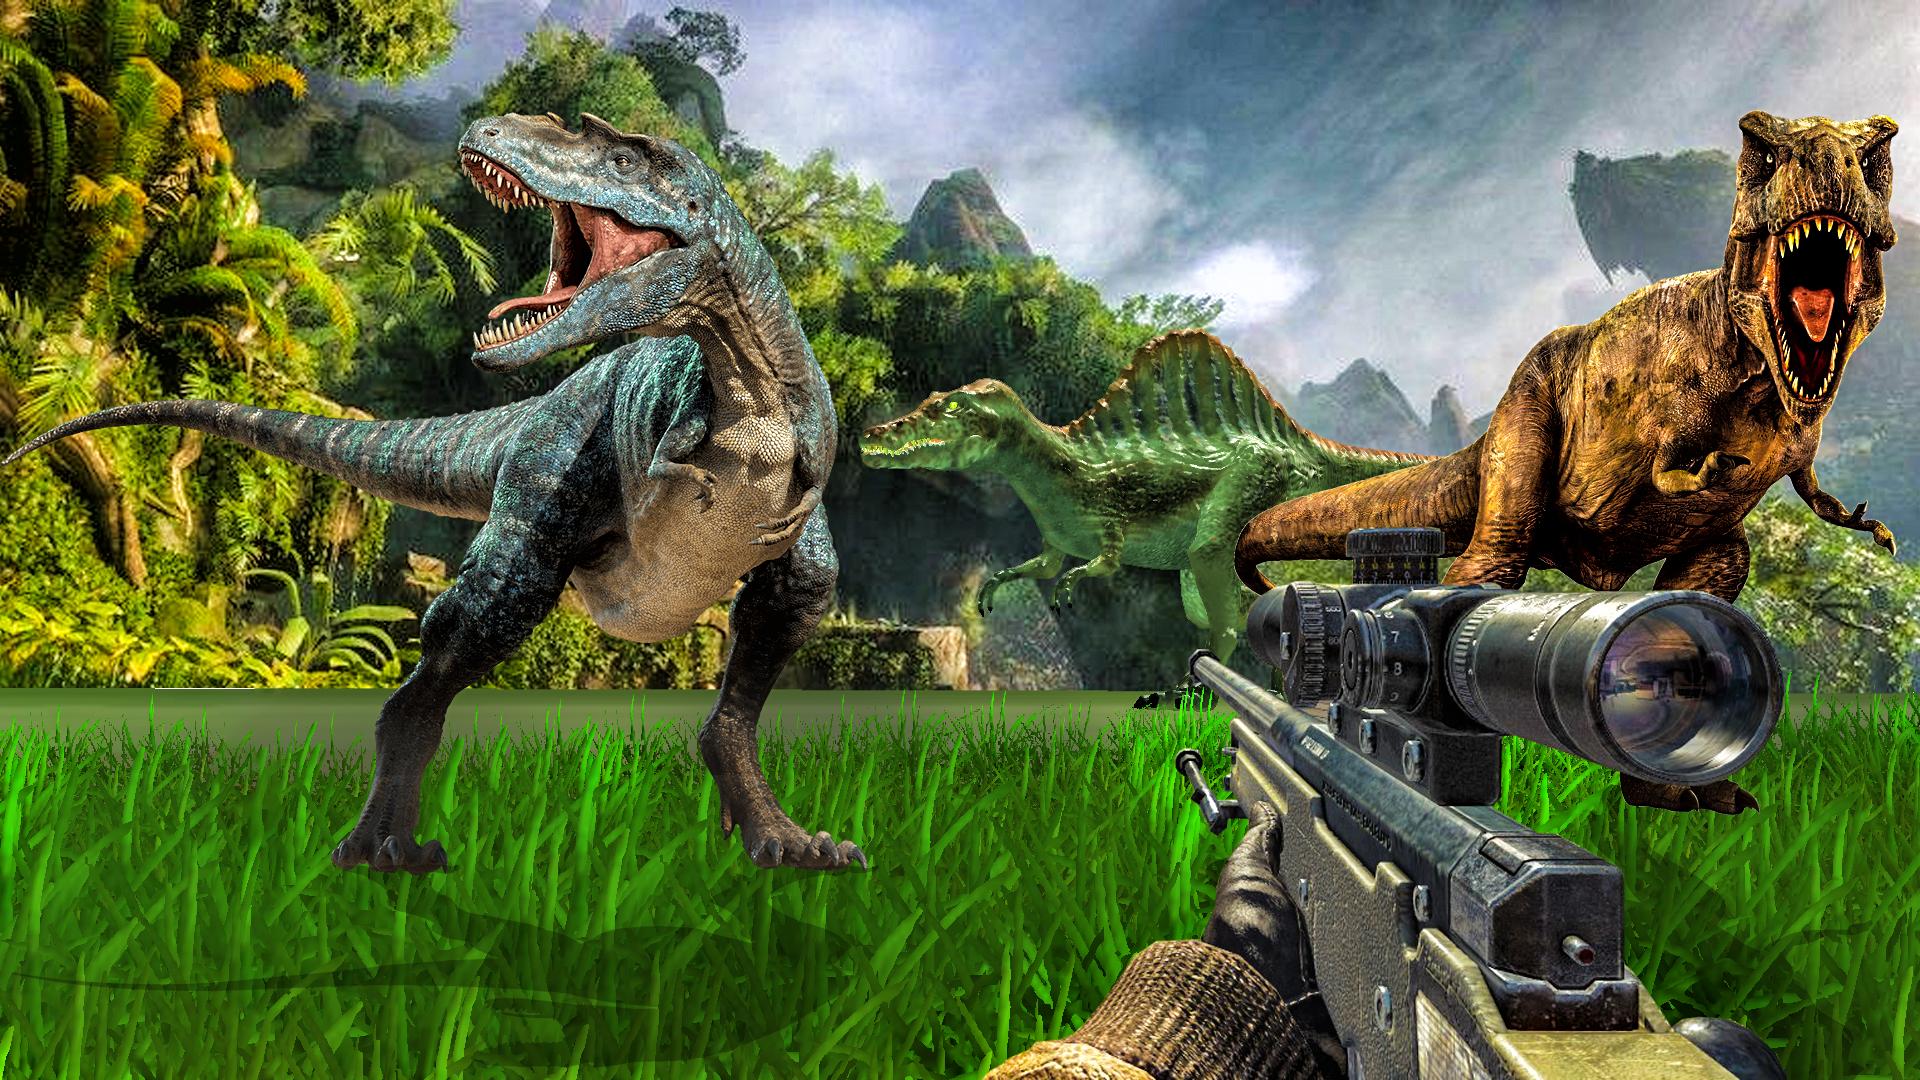 Carnivores Dino hunter game-Dinosaur game shooting 9.1 Screenshot 13